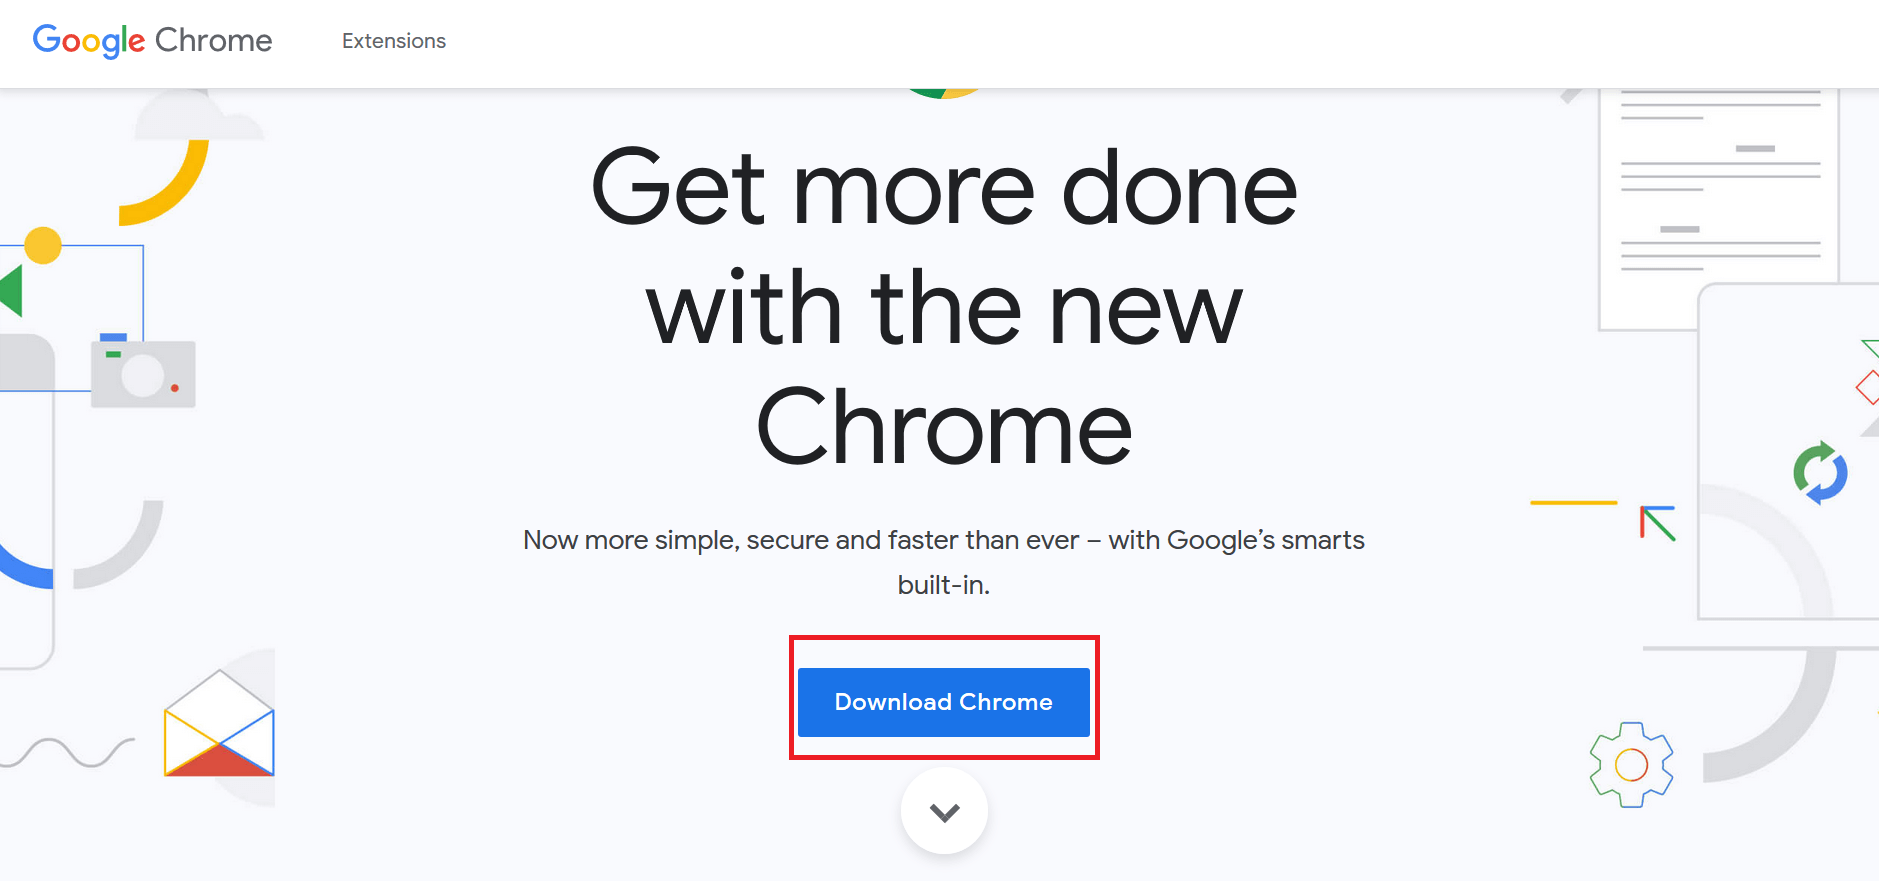 cliquez sur le bouton Télécharger Chrome pour télécharger la dernière version de Chrome Installer.